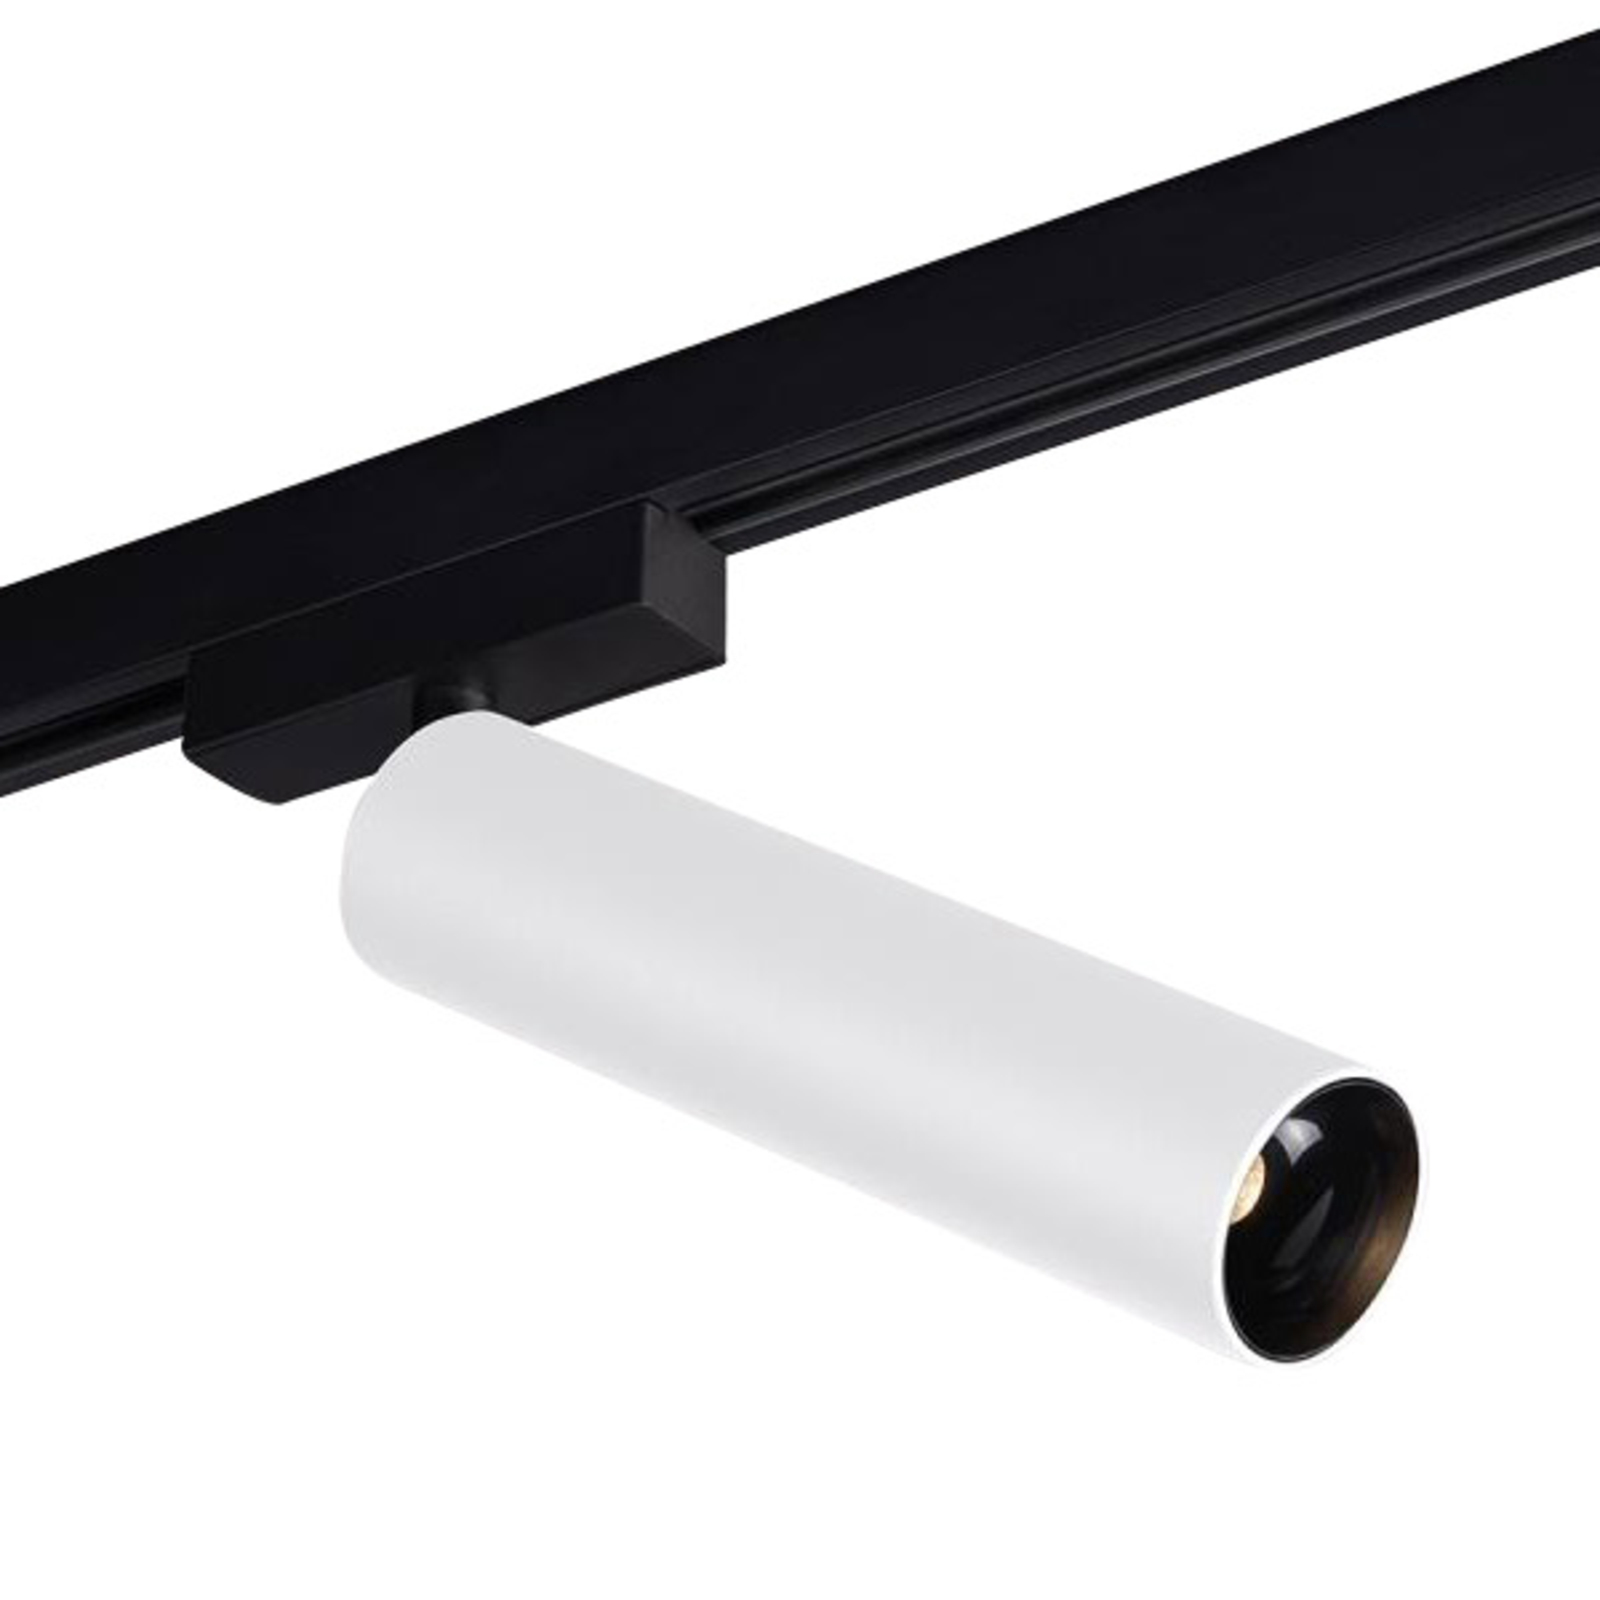 LED-Schienenspot Trigga Volare 930 55° weiß/black